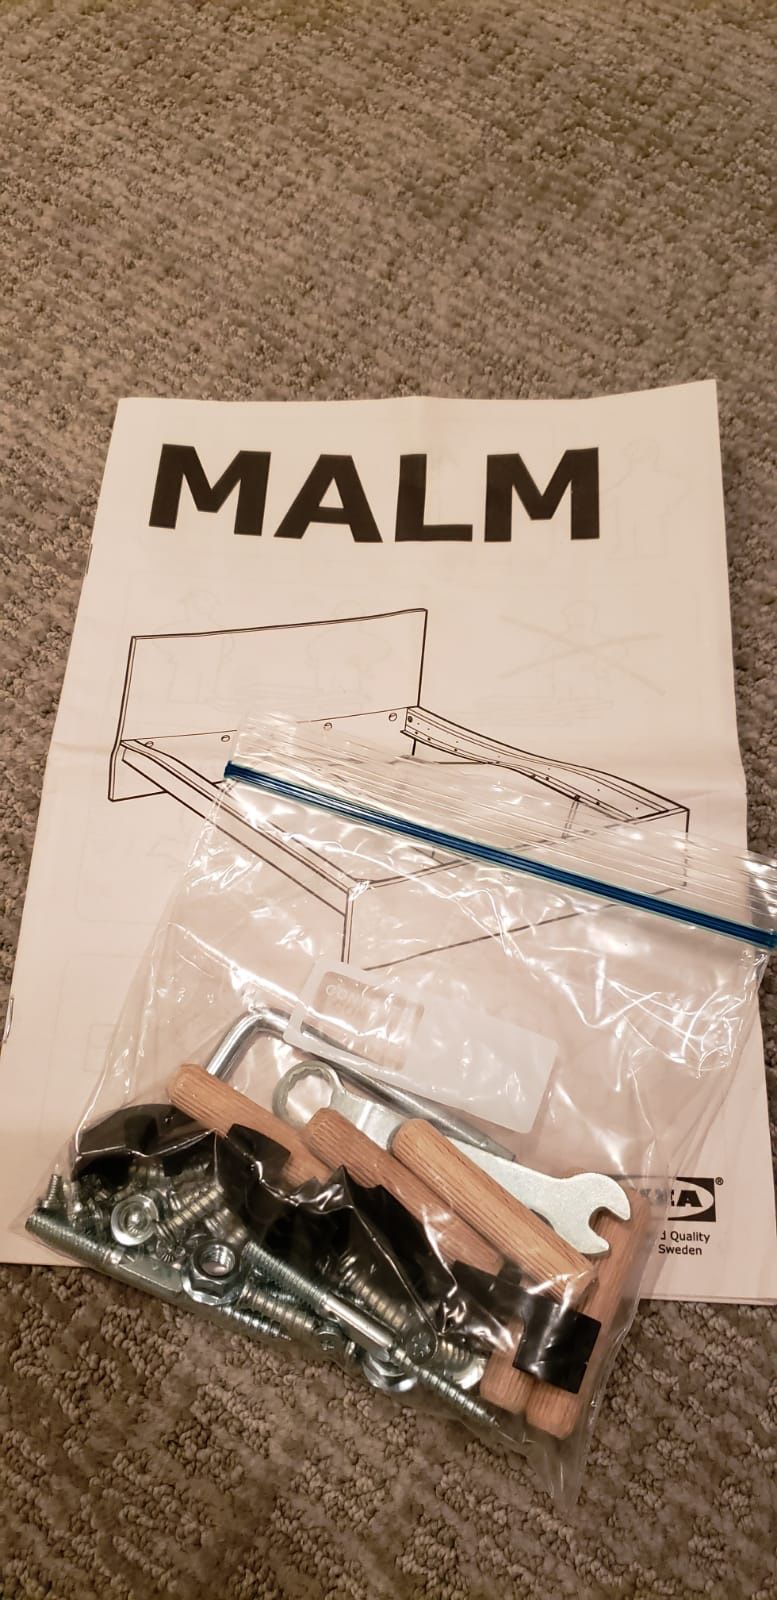 IKEA Malm Bed Frame